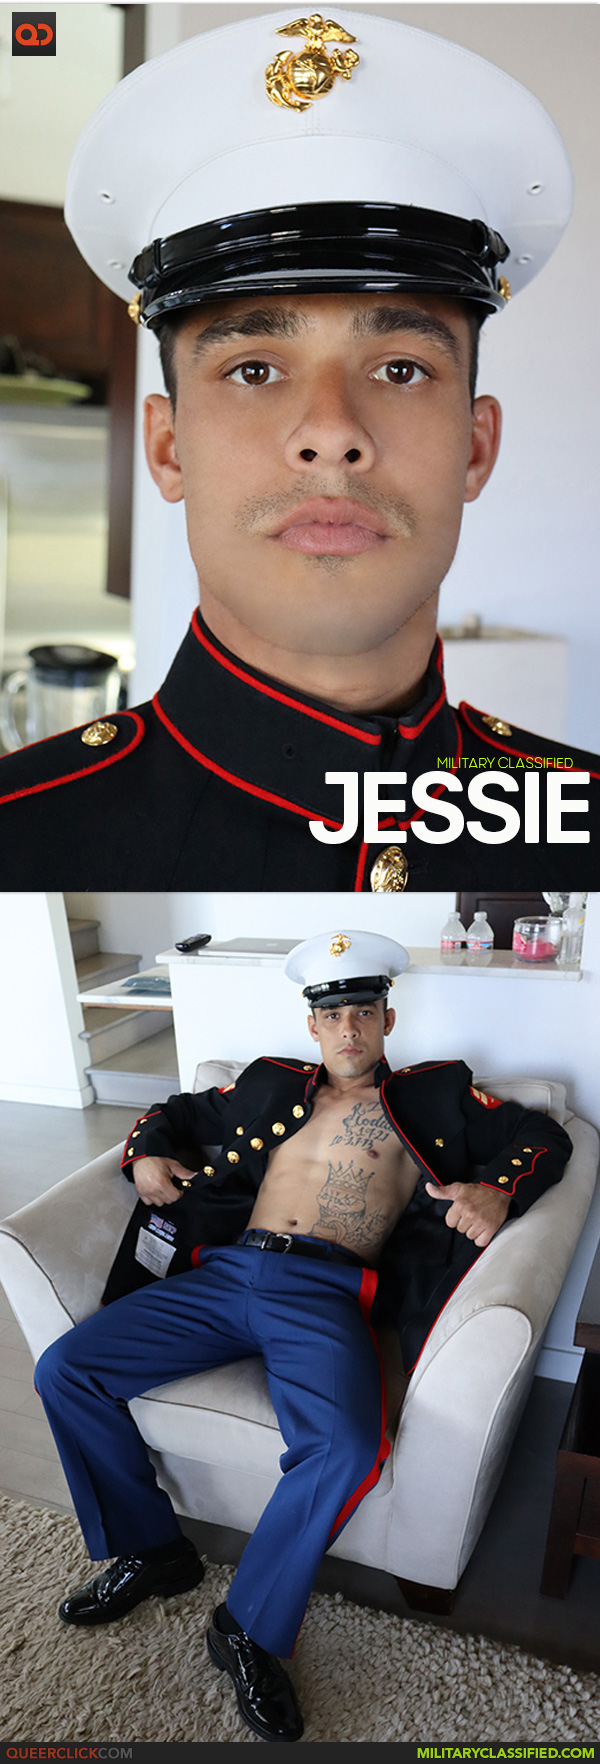 Military Classified: Jessie